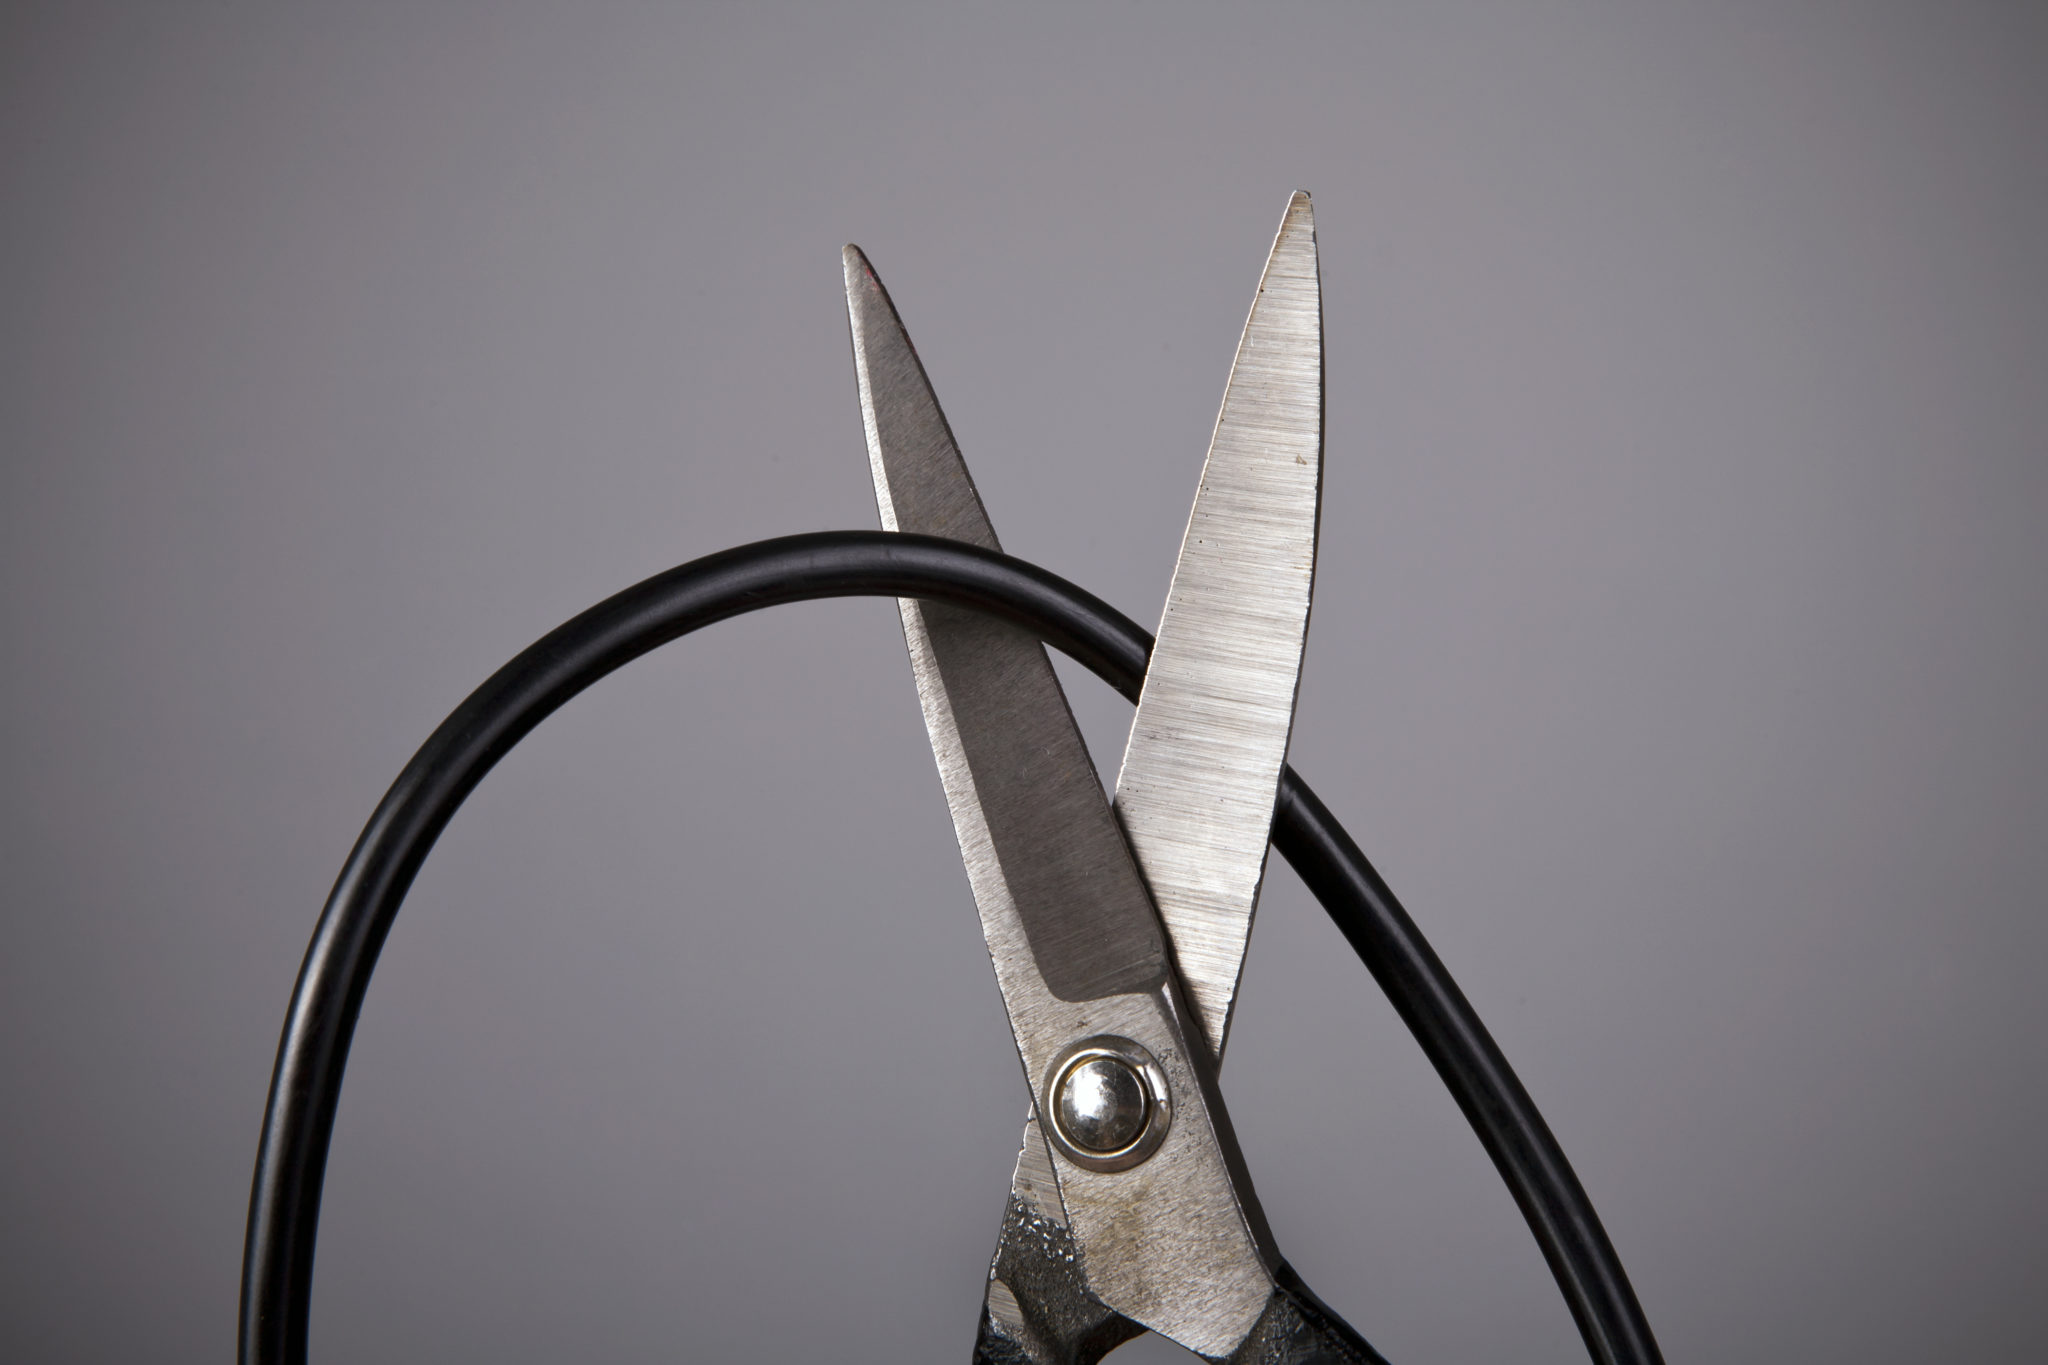 Scissors cutting cord